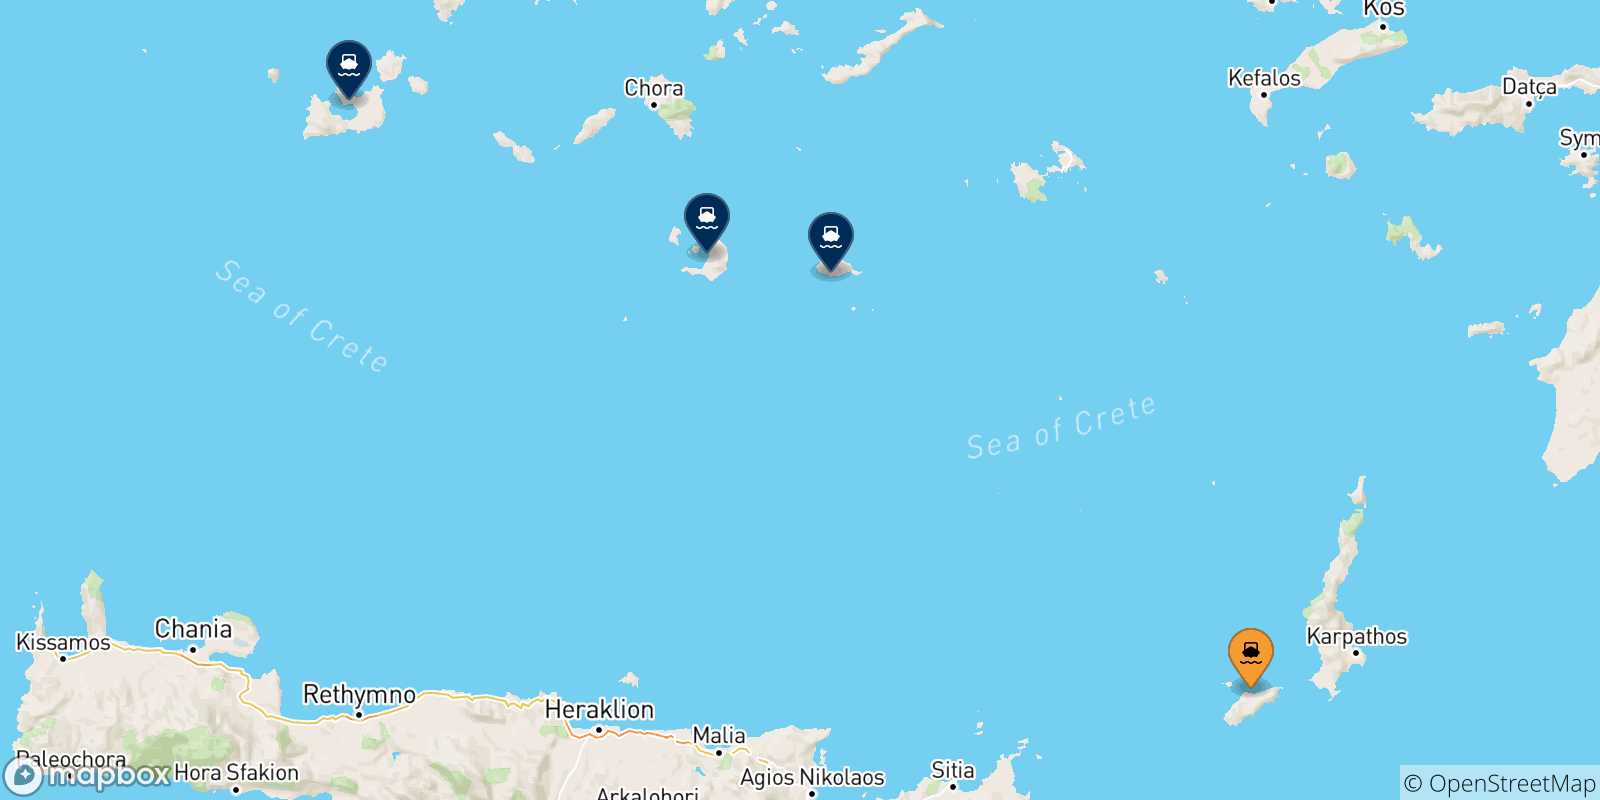 Mappa delle possibili rotte tra Kasos e le Isole Cicladi